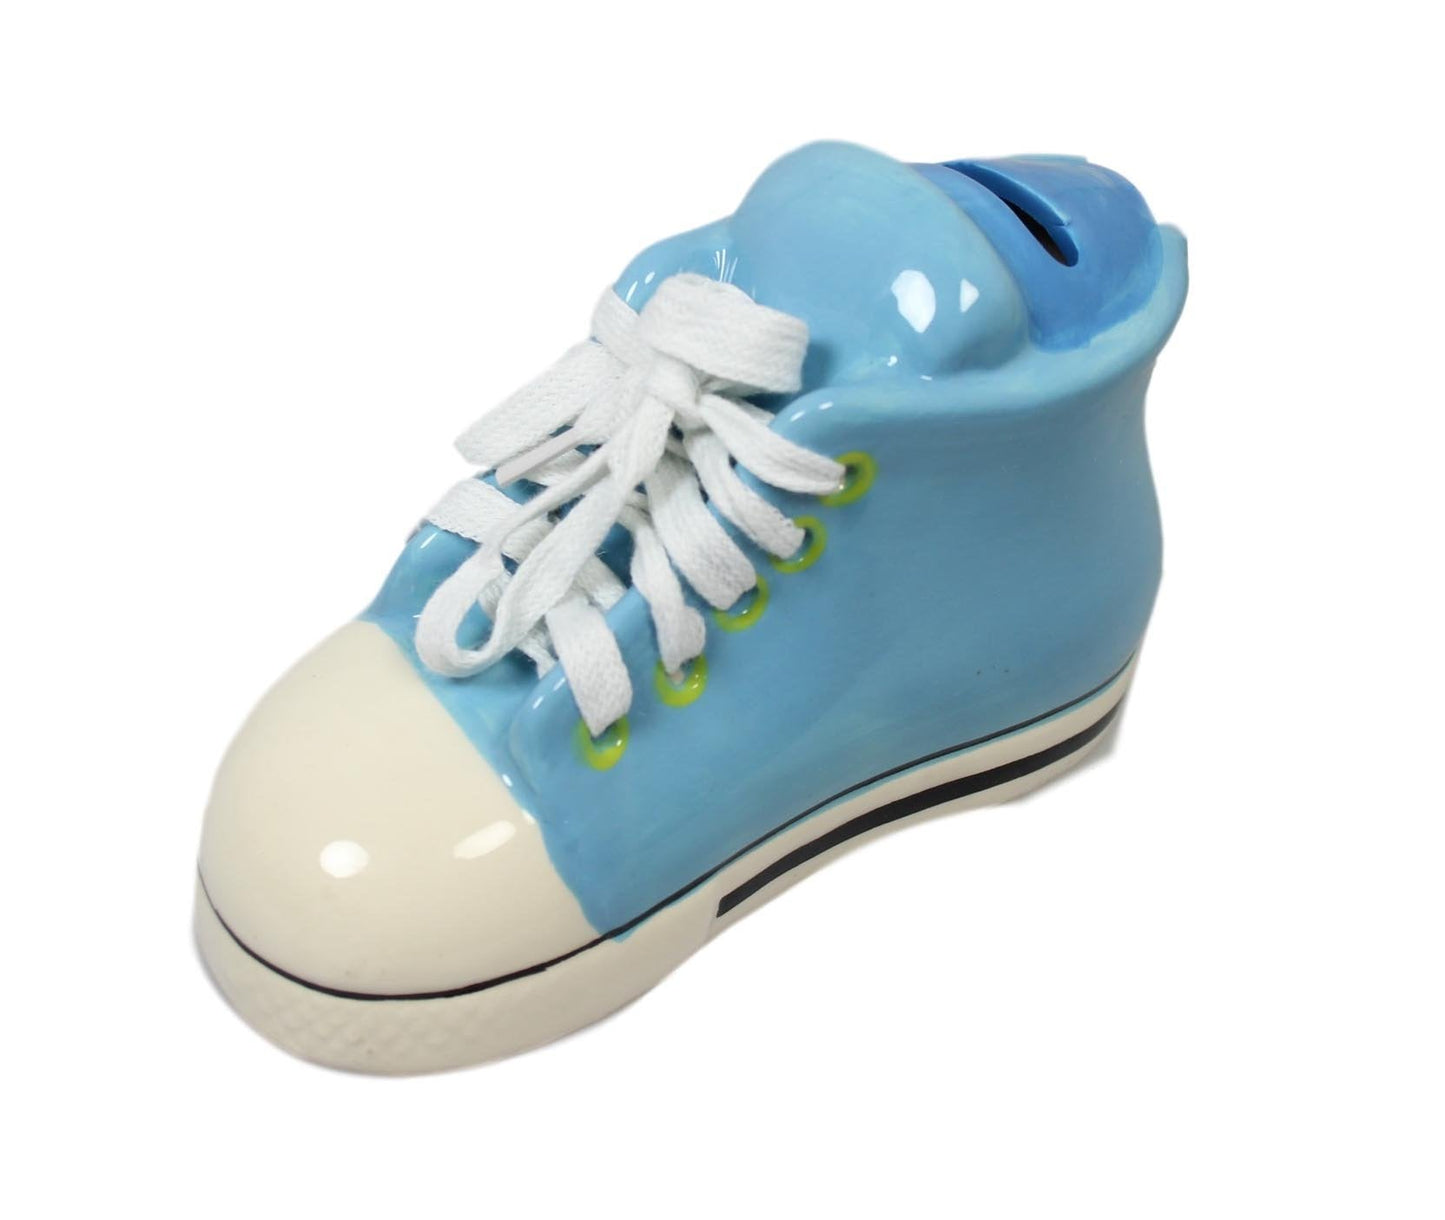 Ceramic Money Box Piggy Bank Shoe Design 16 x 9 cm Assorted Colours 5597 (Parcel Rate)